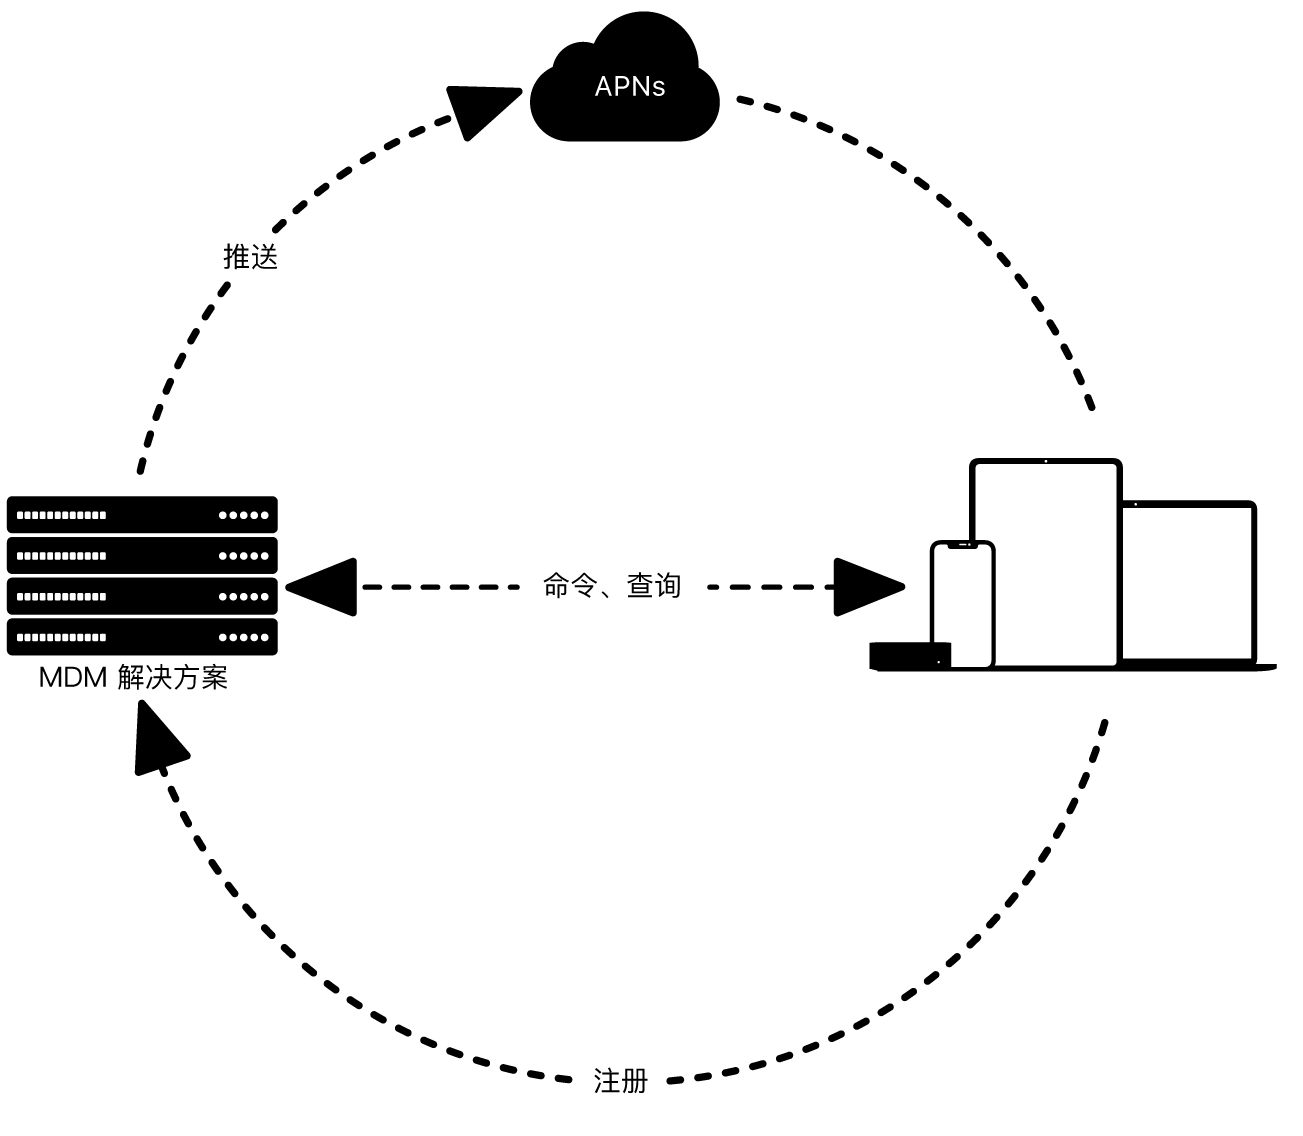 图表显示 APNs 如何与 MDM 解决方案搭配使用。